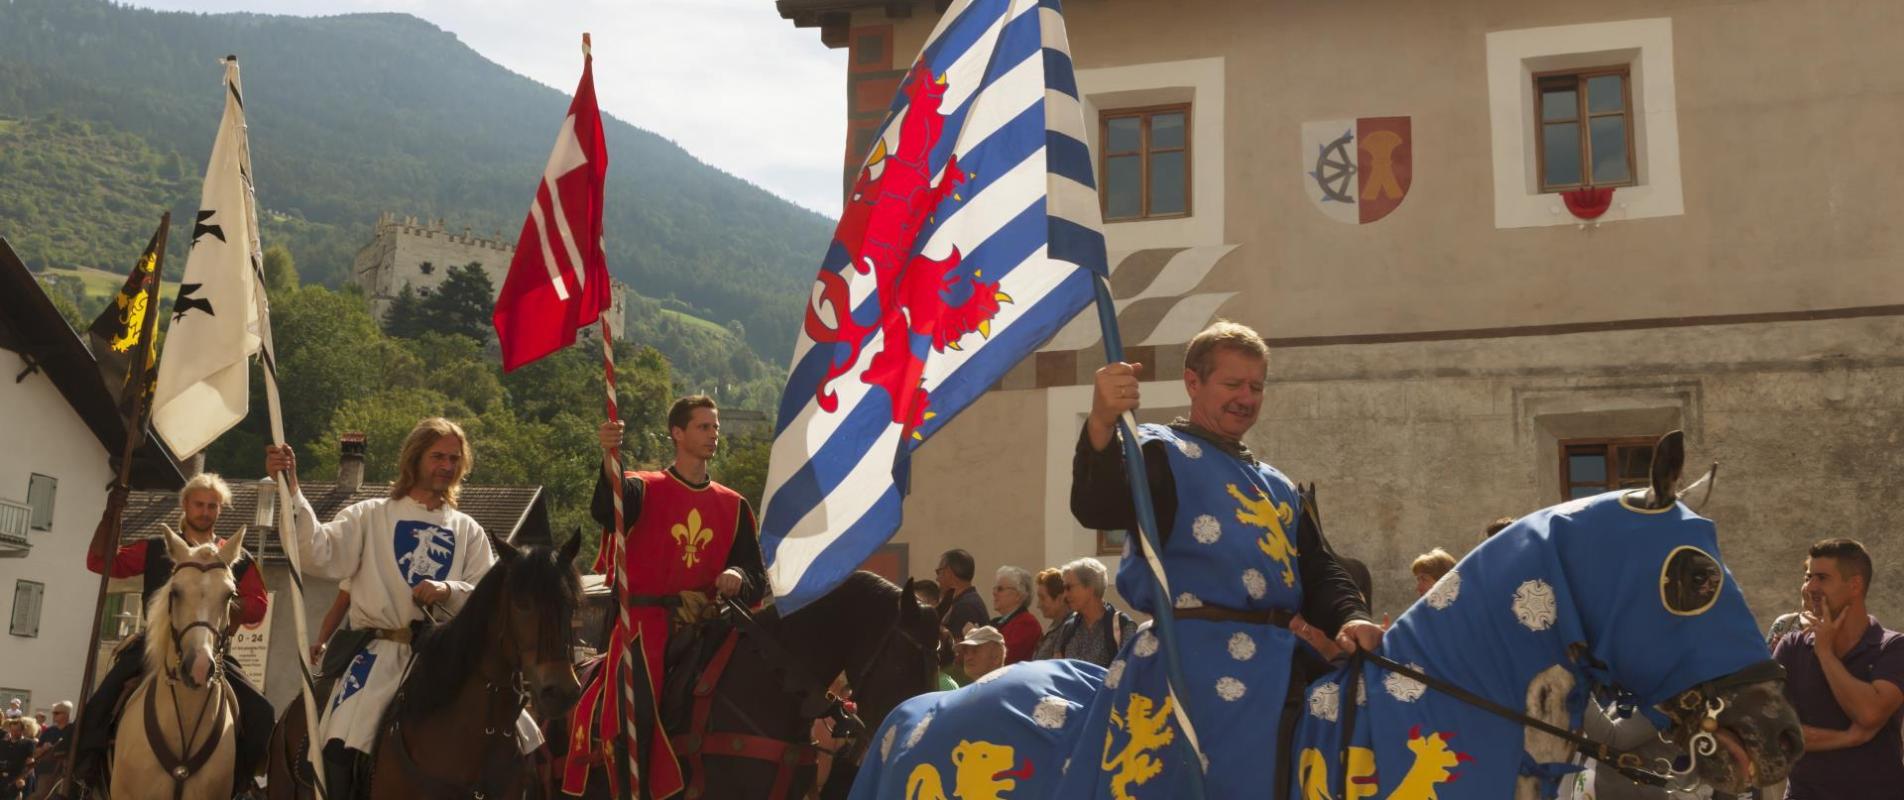 Zuid-Tiroolse ridderspelen